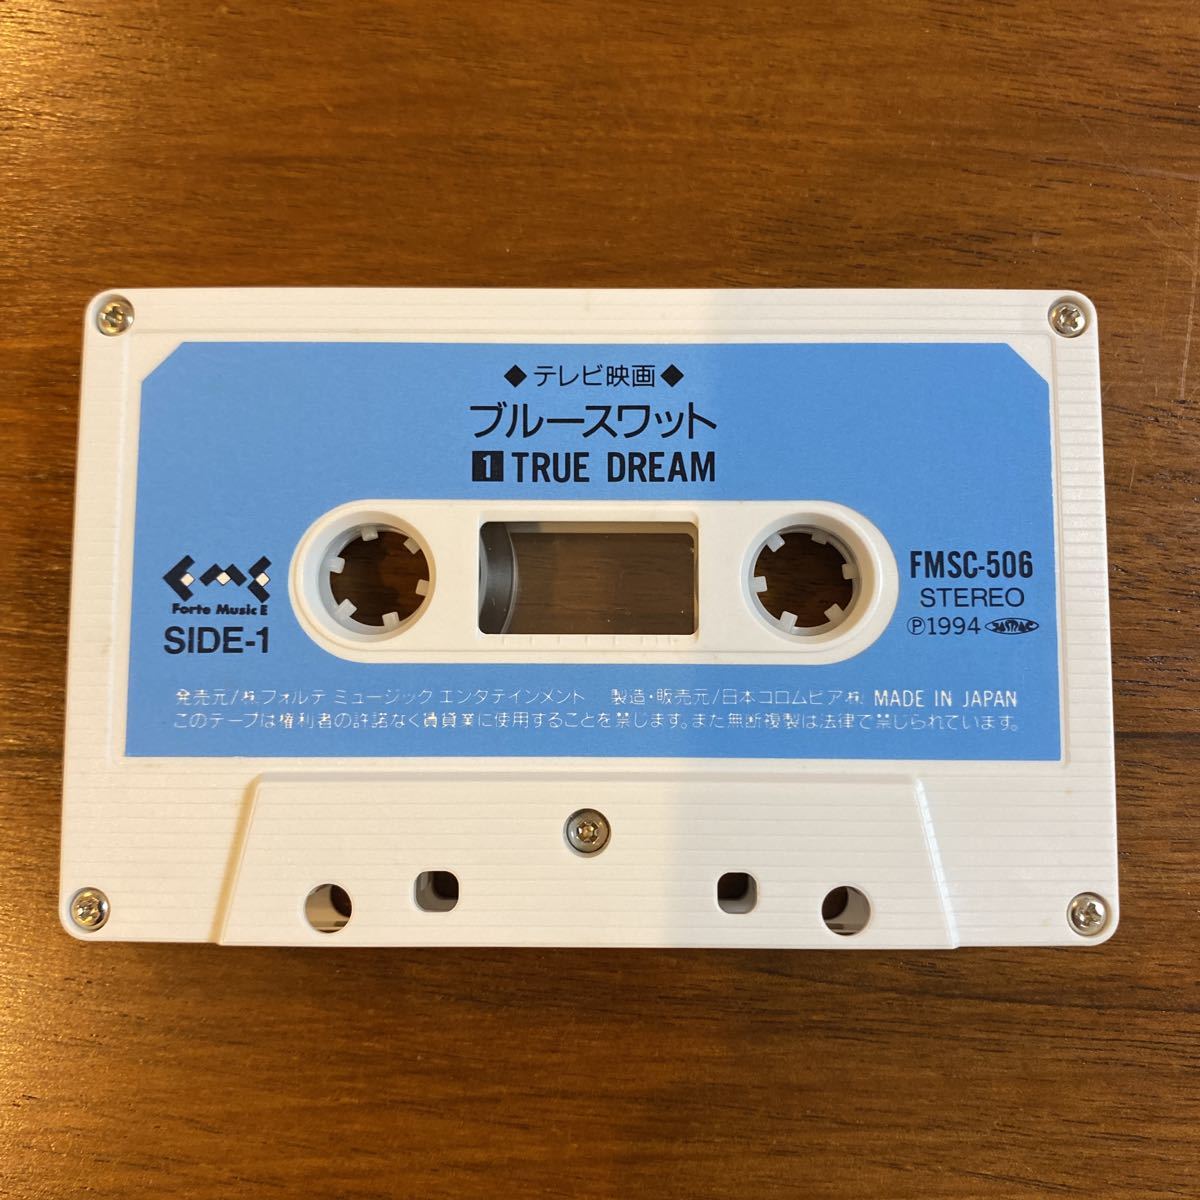 [ редкий кассетная лента ] телевизор фильм Blue SWAT тематическая песня 1.TRUE DREAM 2.HELLO THERE./ передний рисовое поле .. телевизор утро день 1994 год Япония ko ром Via 